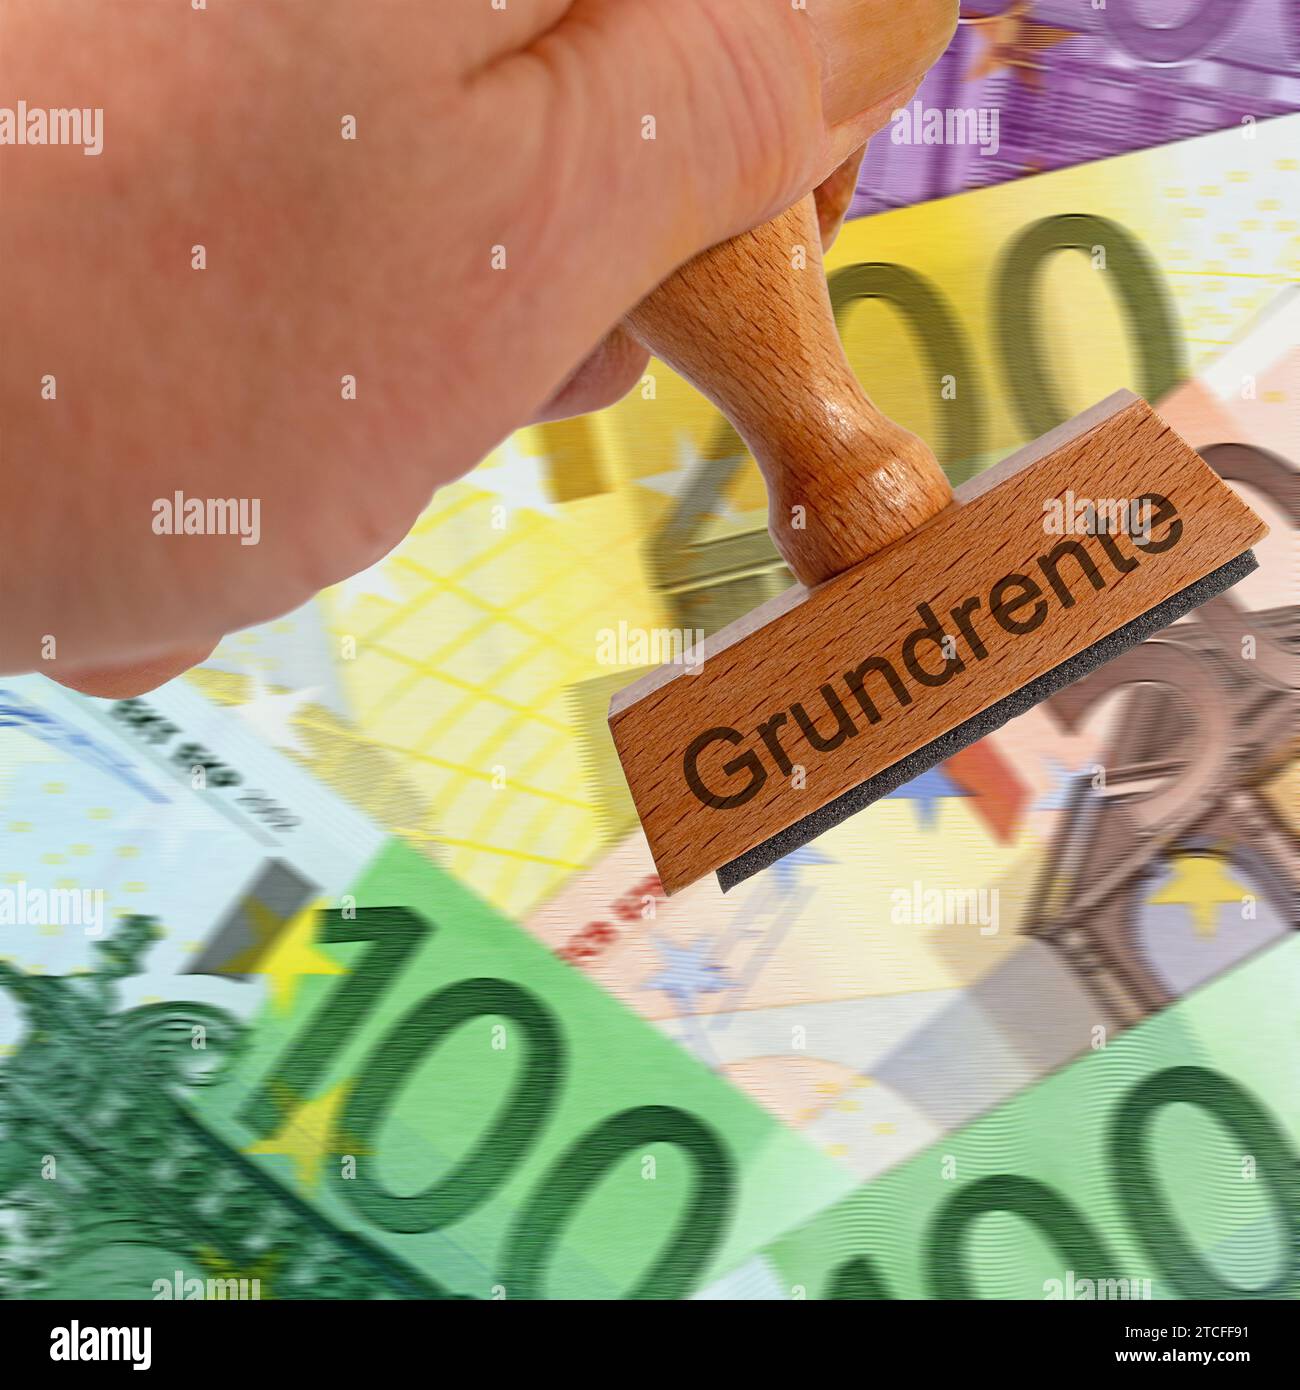 Francobollo con la scritta "Grundrente", traduzione "Pensione di base" sulle banconote Foto Stock